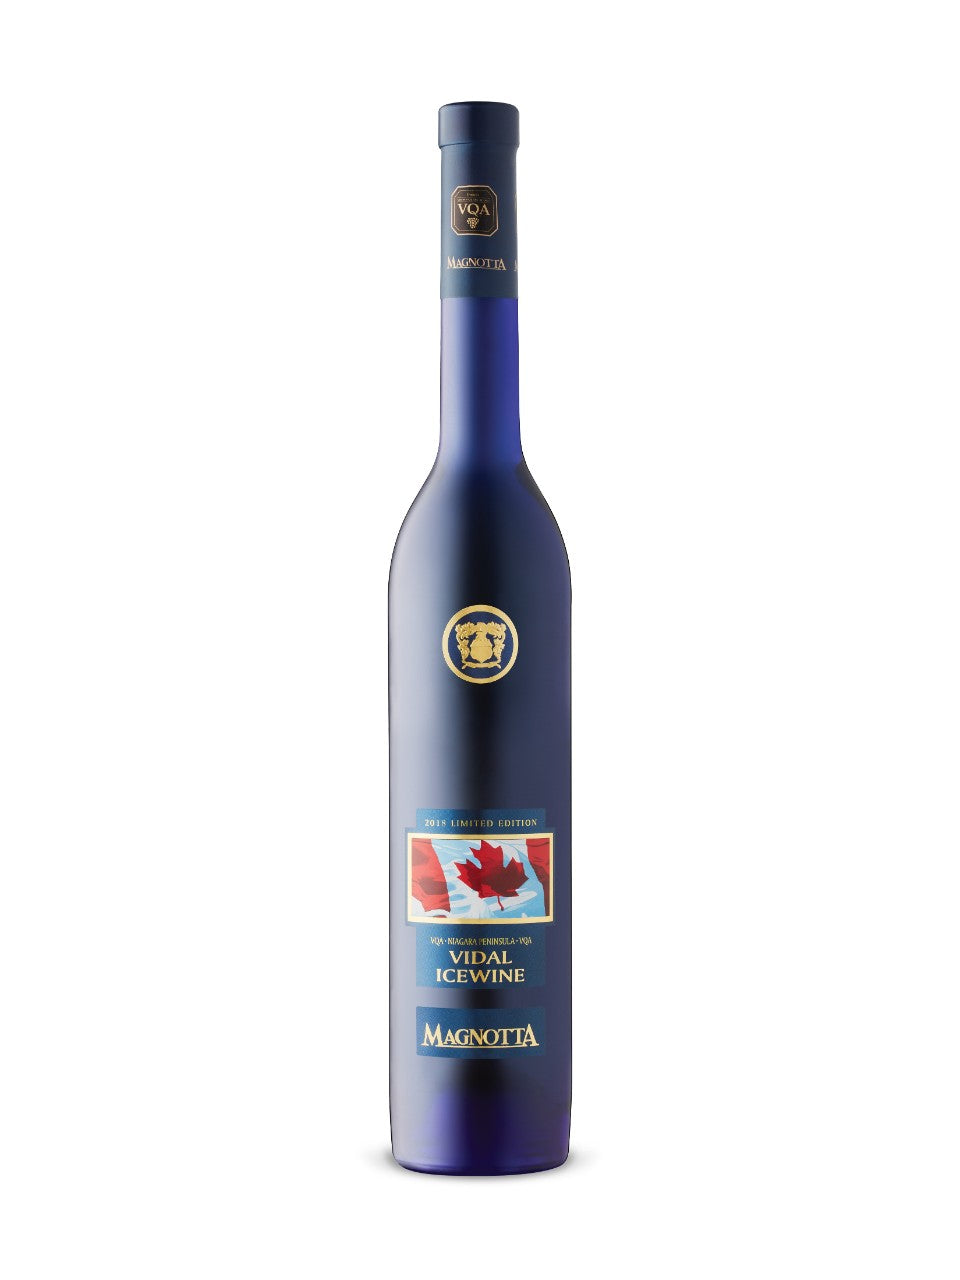 Magnotta Vidal Icewine  375 mL bottle VINTAGES